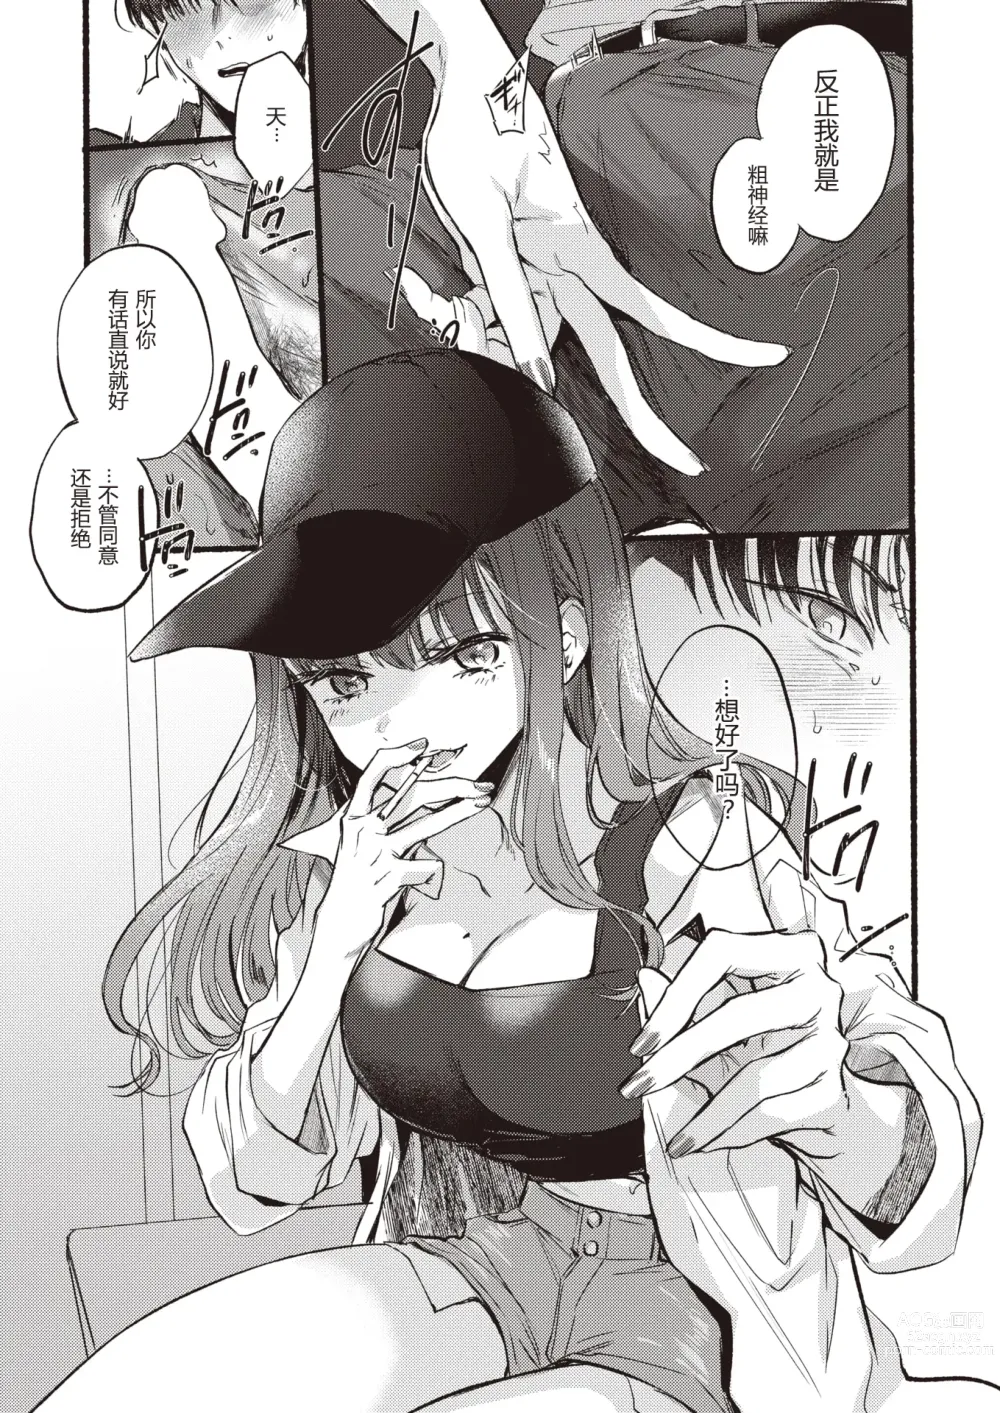 Page 8 of manga Himetomo - The secret fetish!